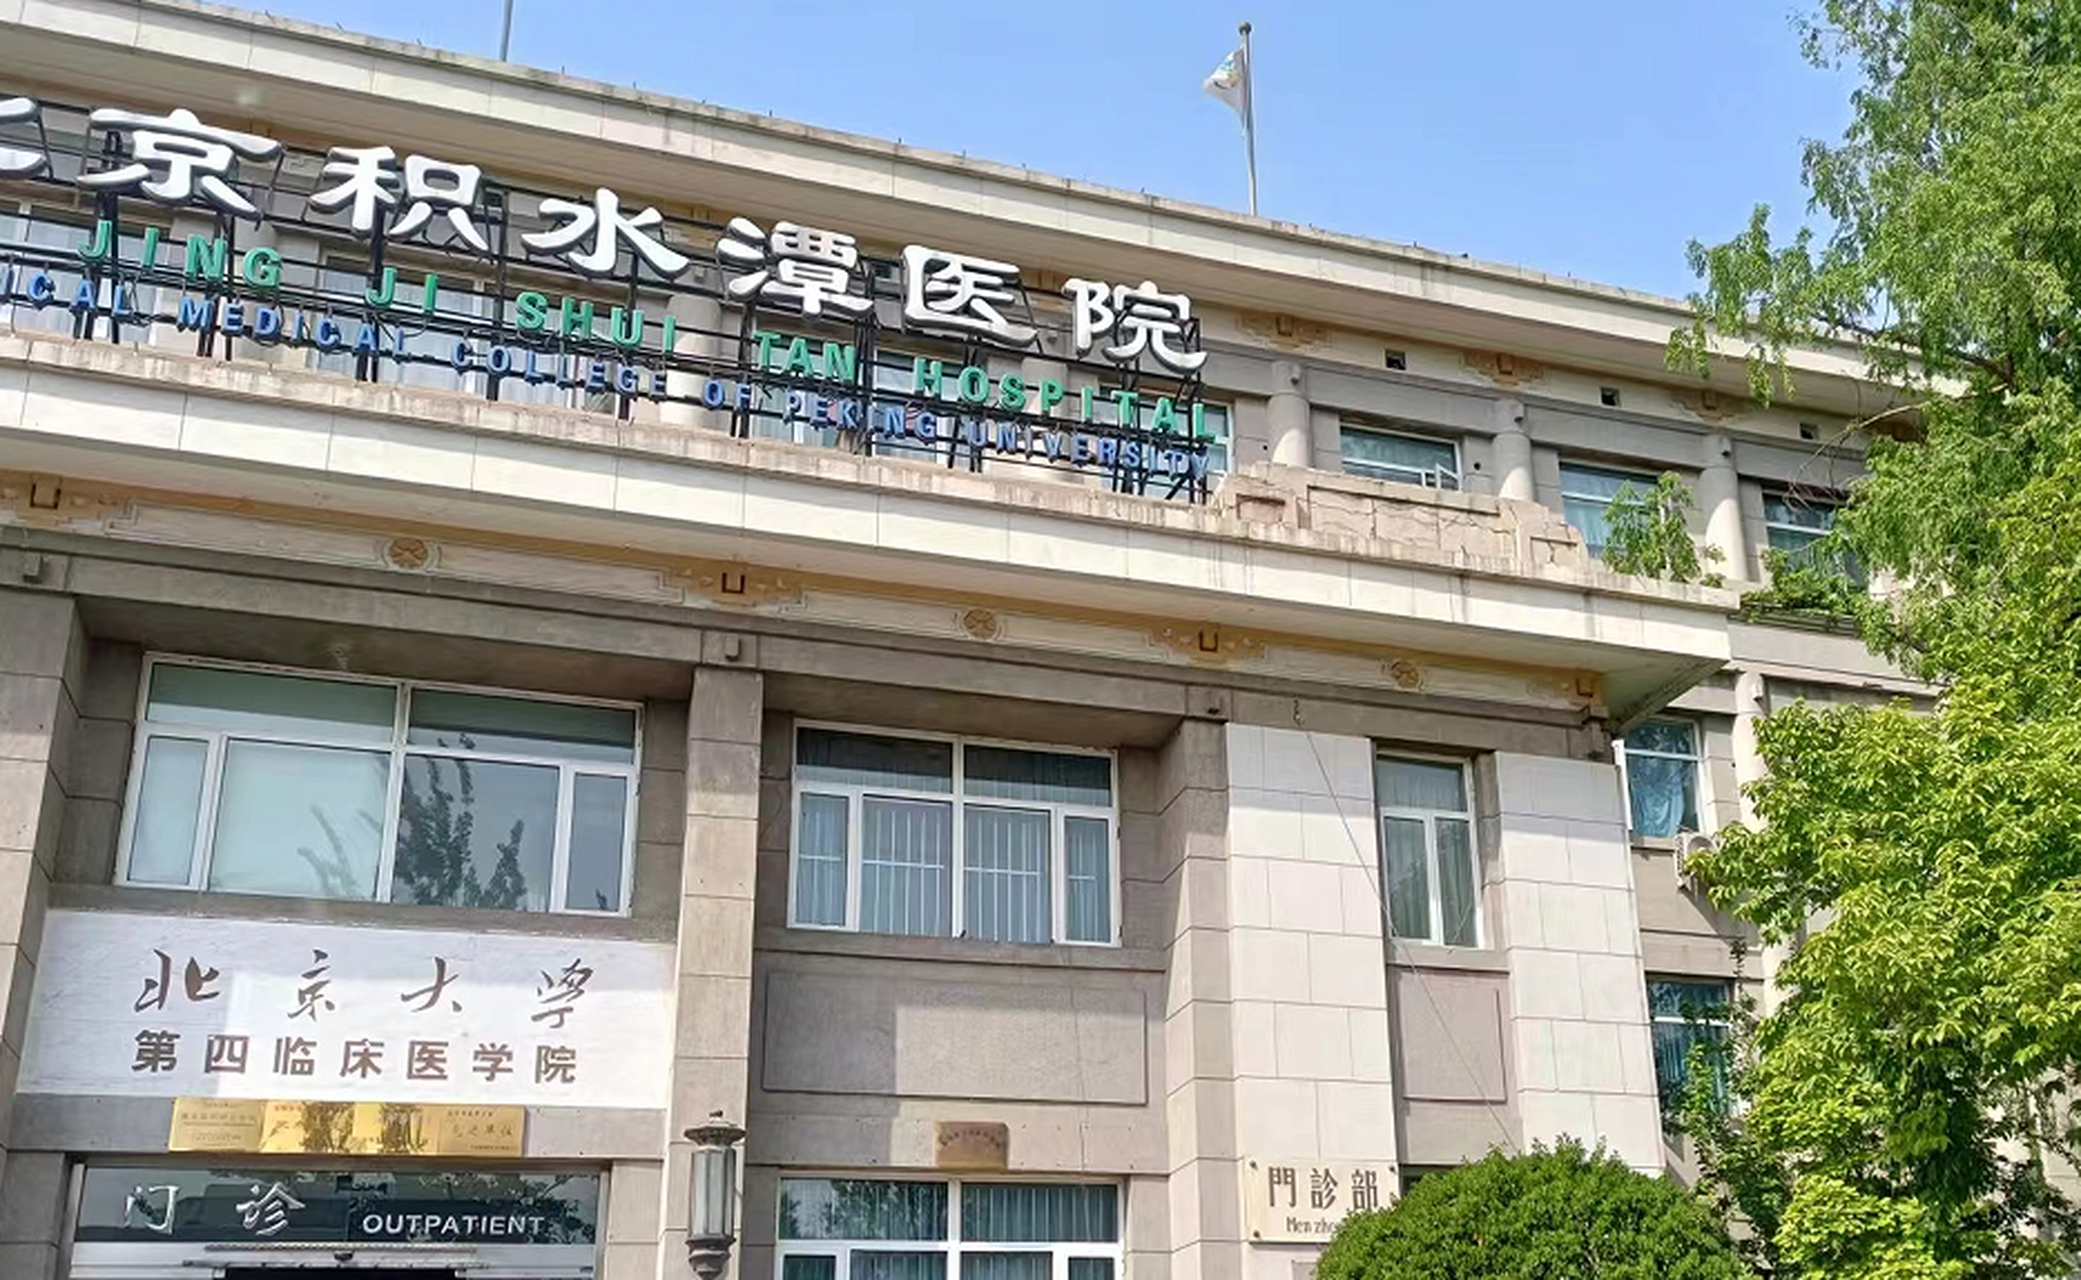 北京积水潭医院作为国内最强骨科,骨科的专家也是特别多的,想去看病找